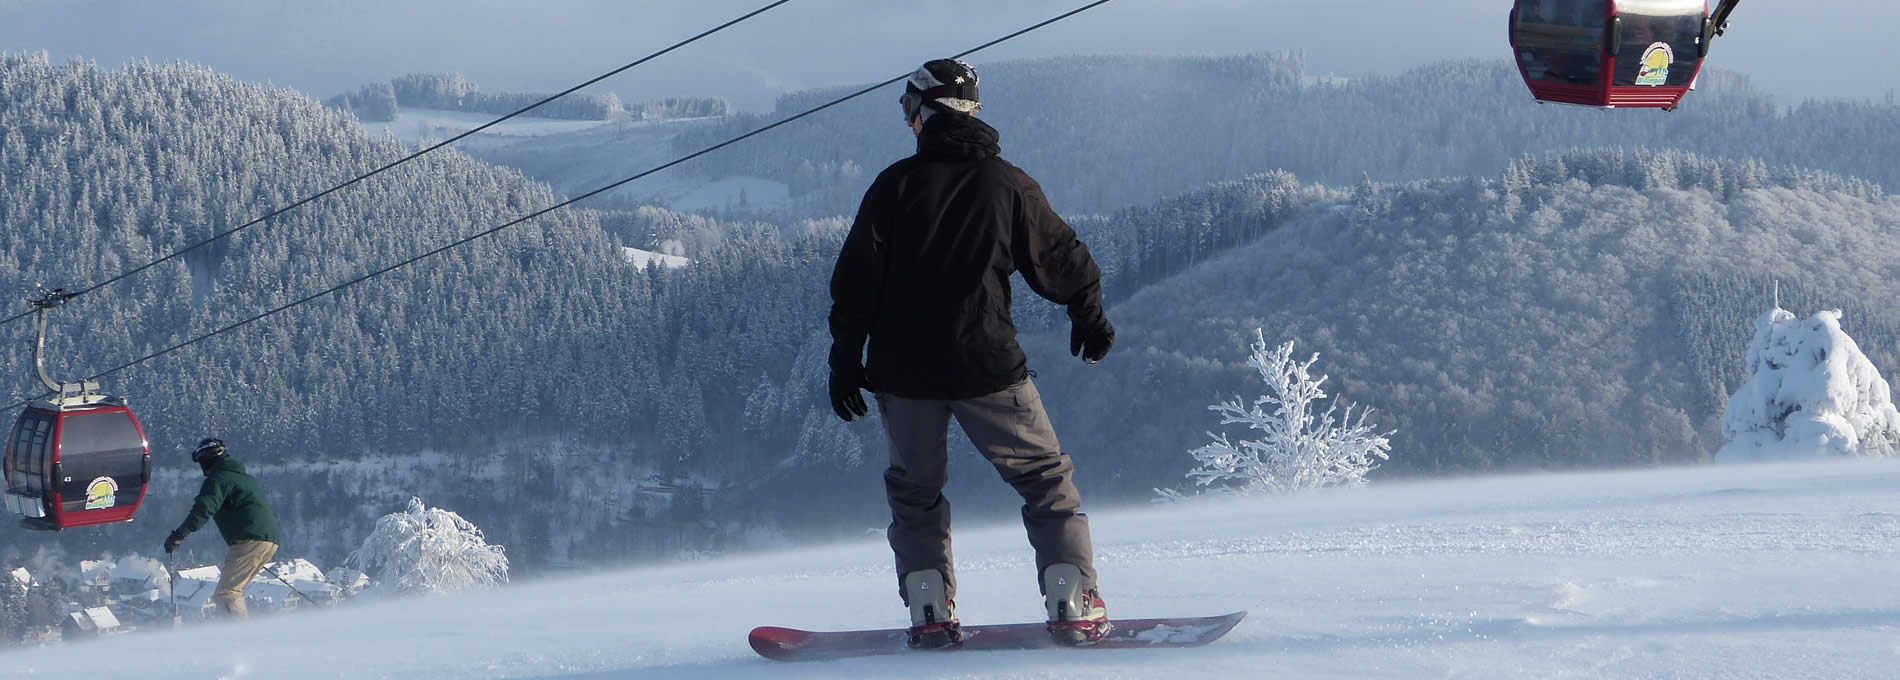 Slider Wintersport Snowboard